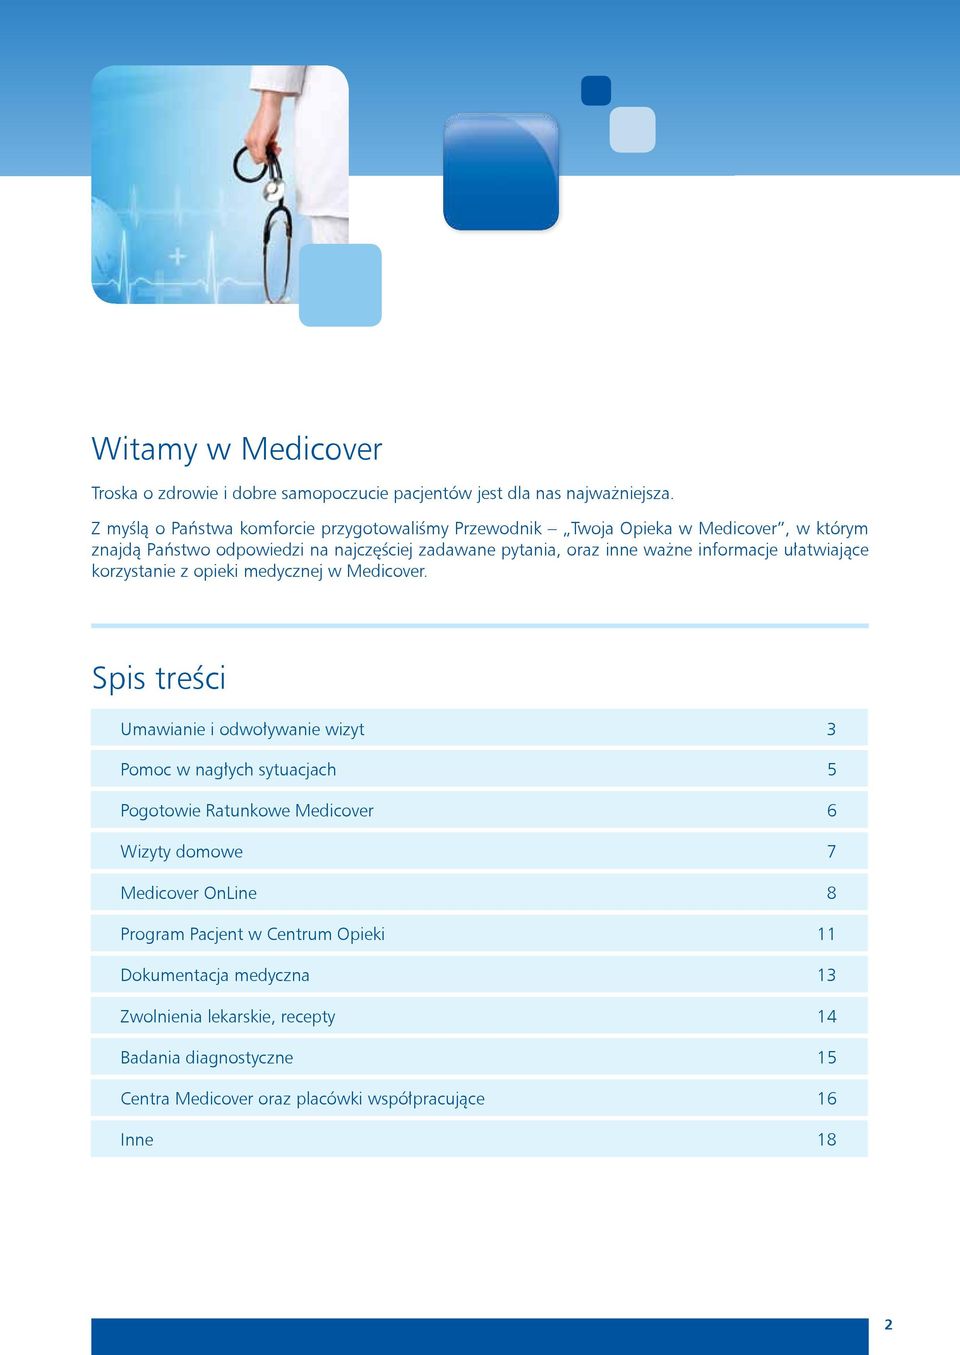 ważne informacje ułatwiające korzystanie z opieki medycznej w Medicover.